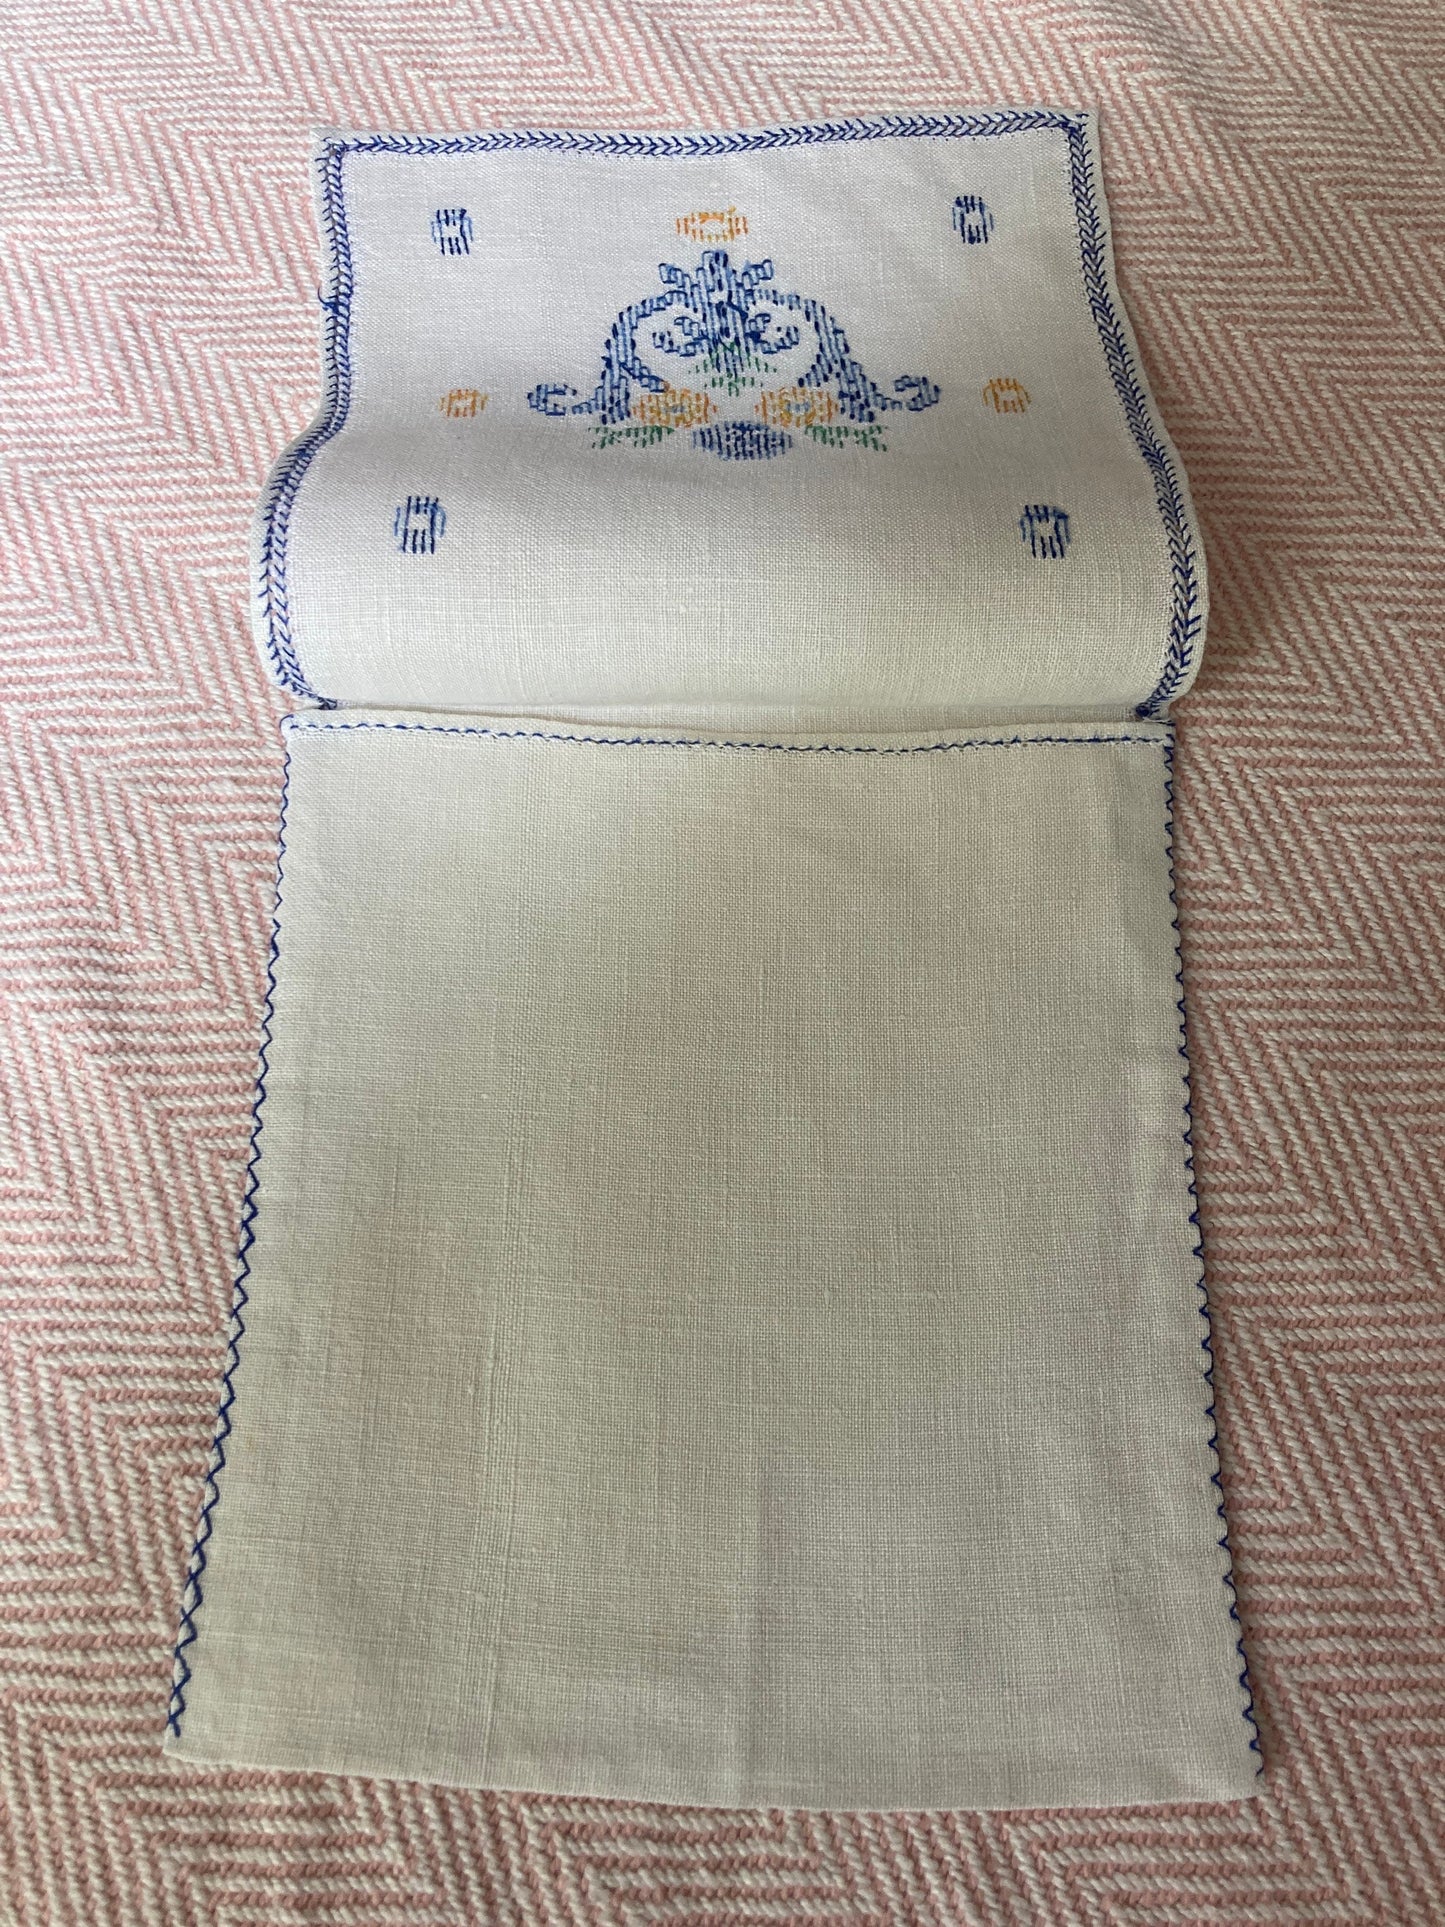 White Handkerchief case hankie case Crisp cotton embroidered blue cross-stitch thread